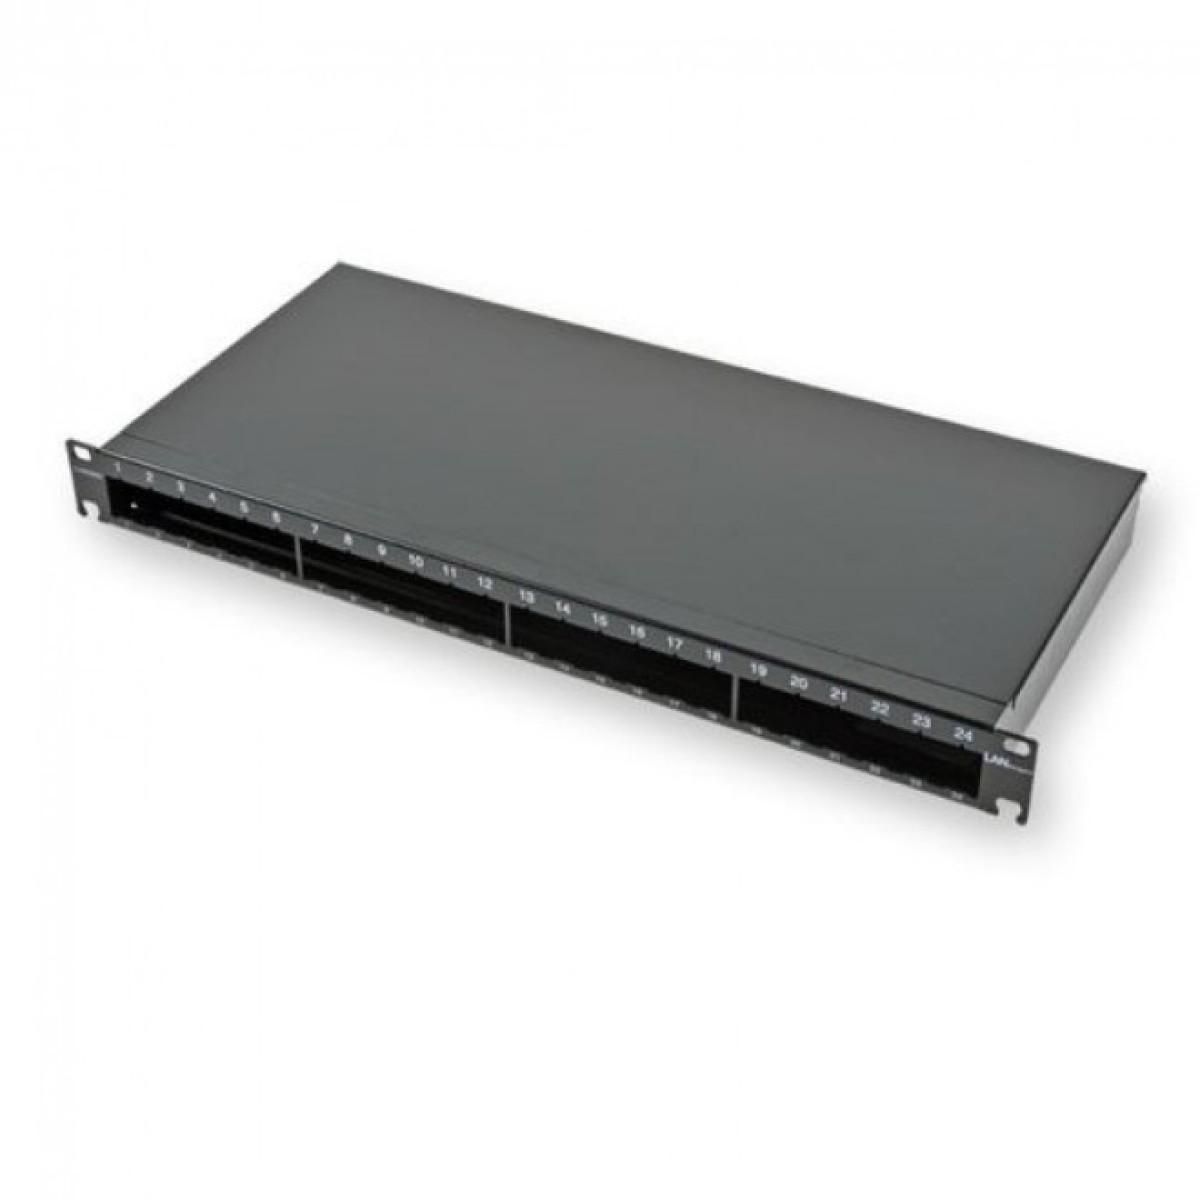 Не выдвижная патч-панель LANC под 24 модуля, 1U, 19",на 4 стандартных сплайс-кассеты,черная 98_98.jpg - фото 1